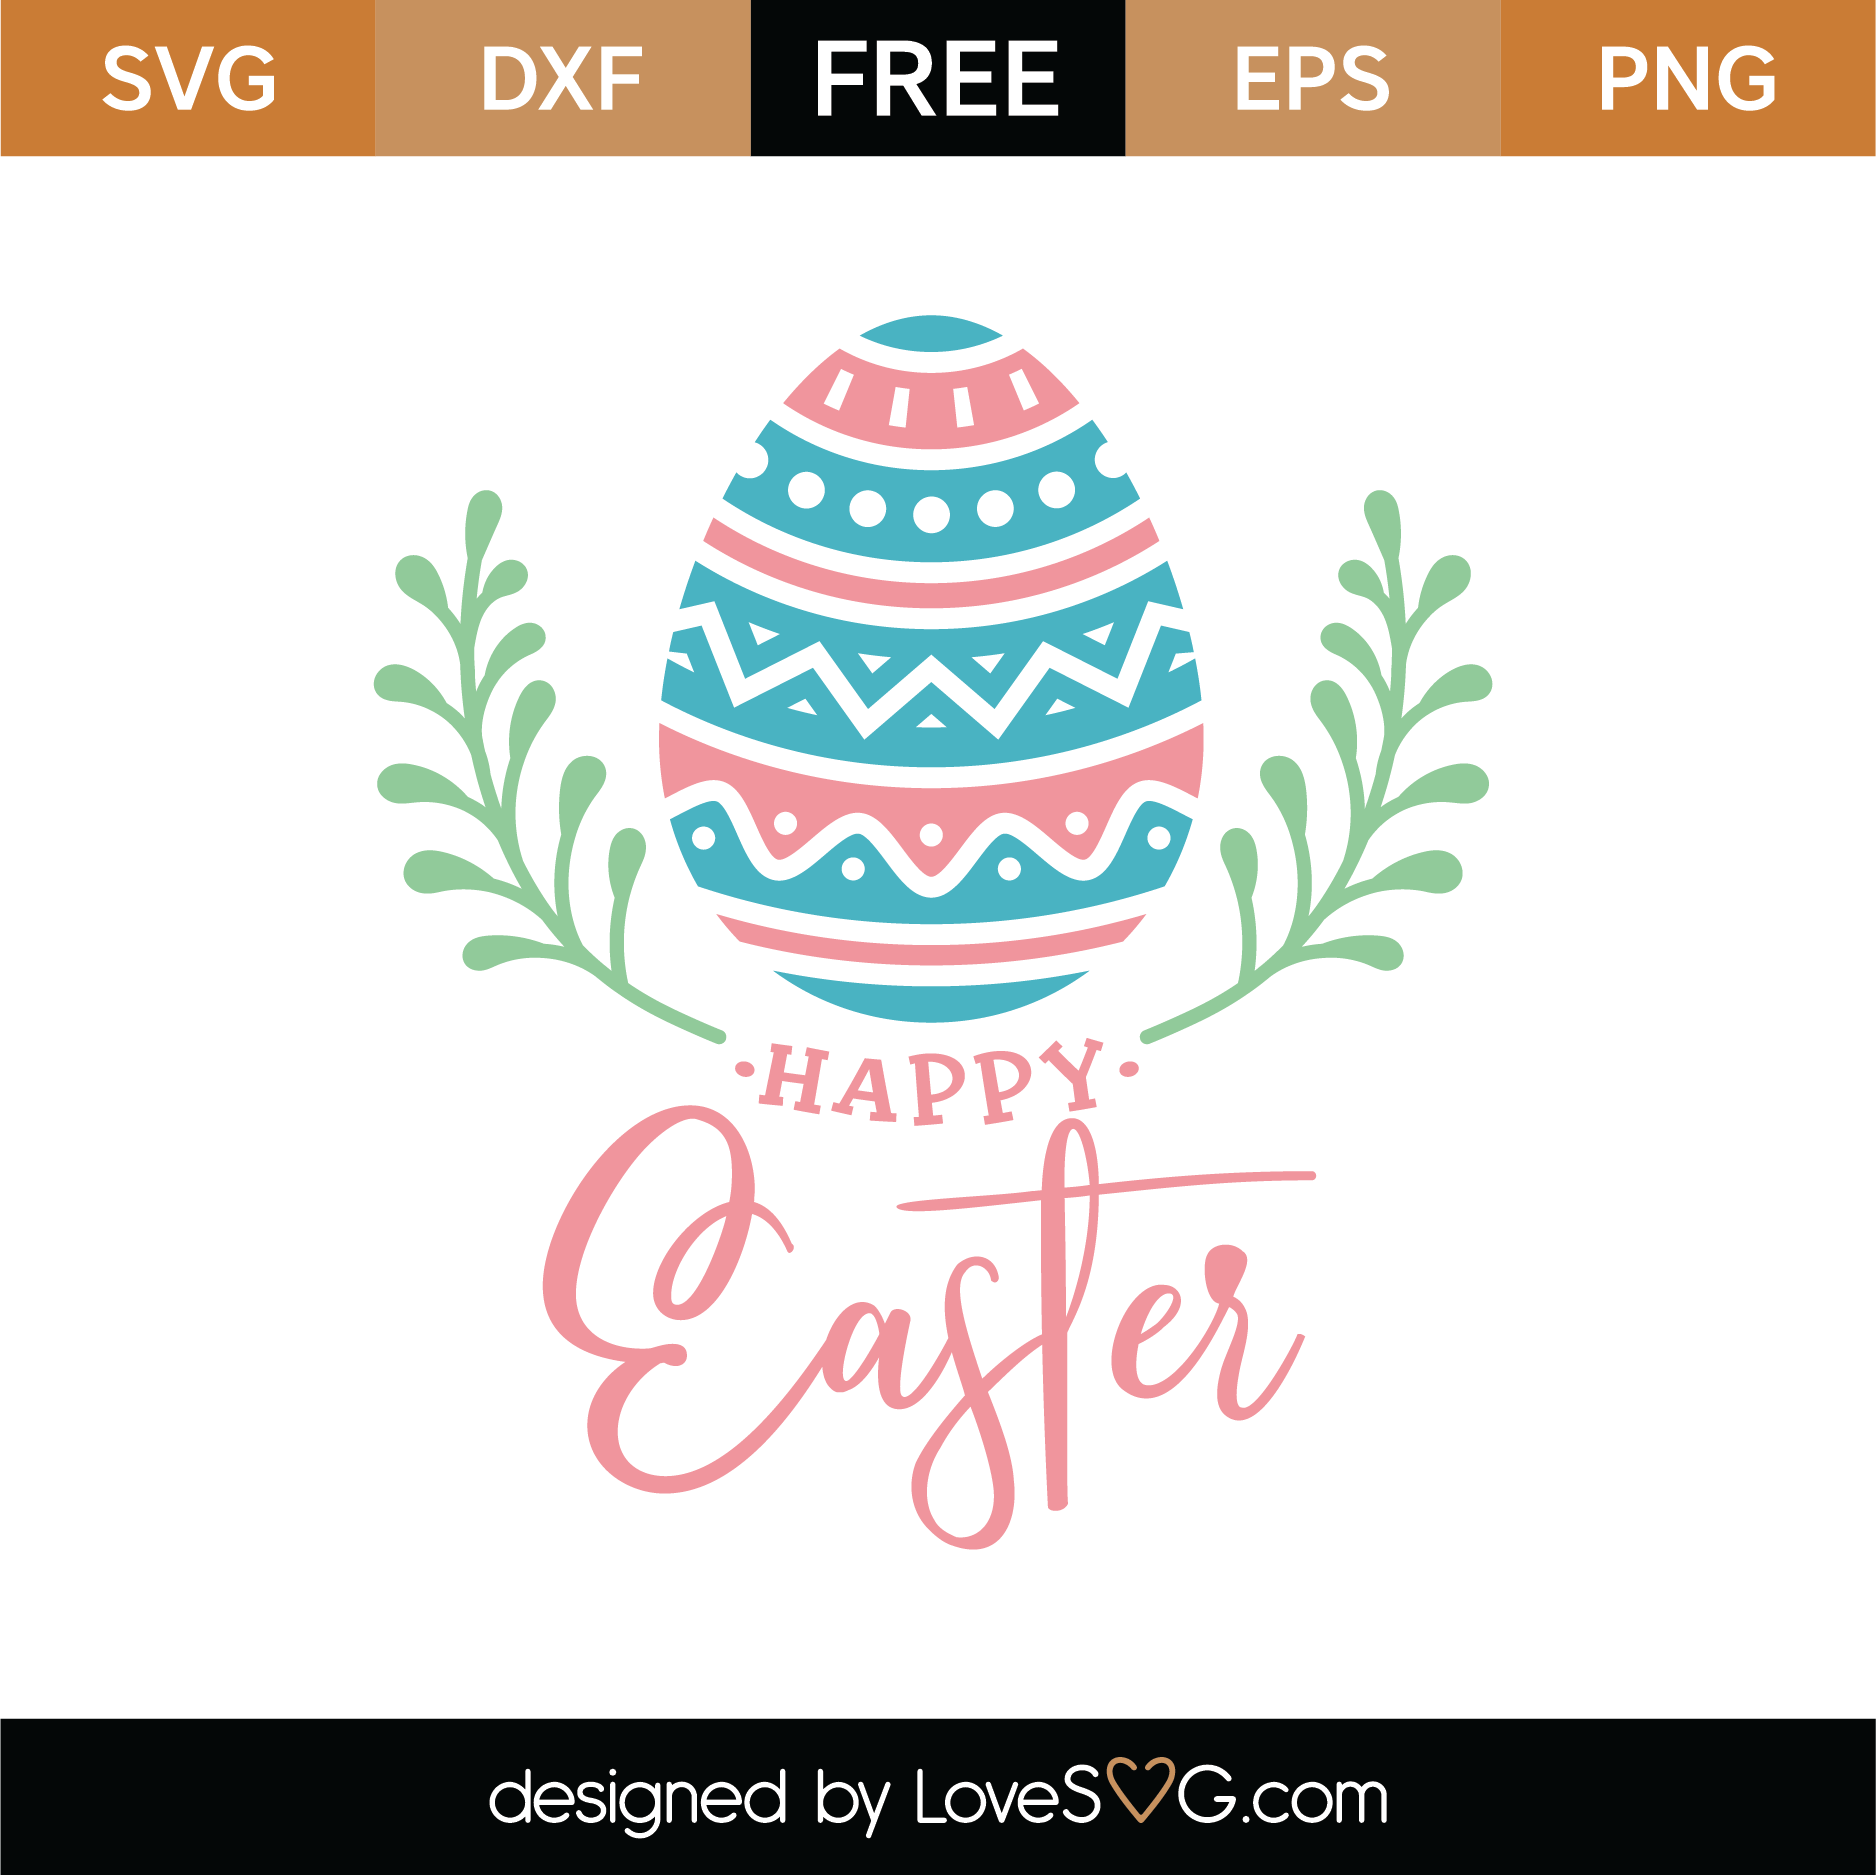 Download Free Happy Easter Egg Laurel SVG Cut File | Lovesvg.com